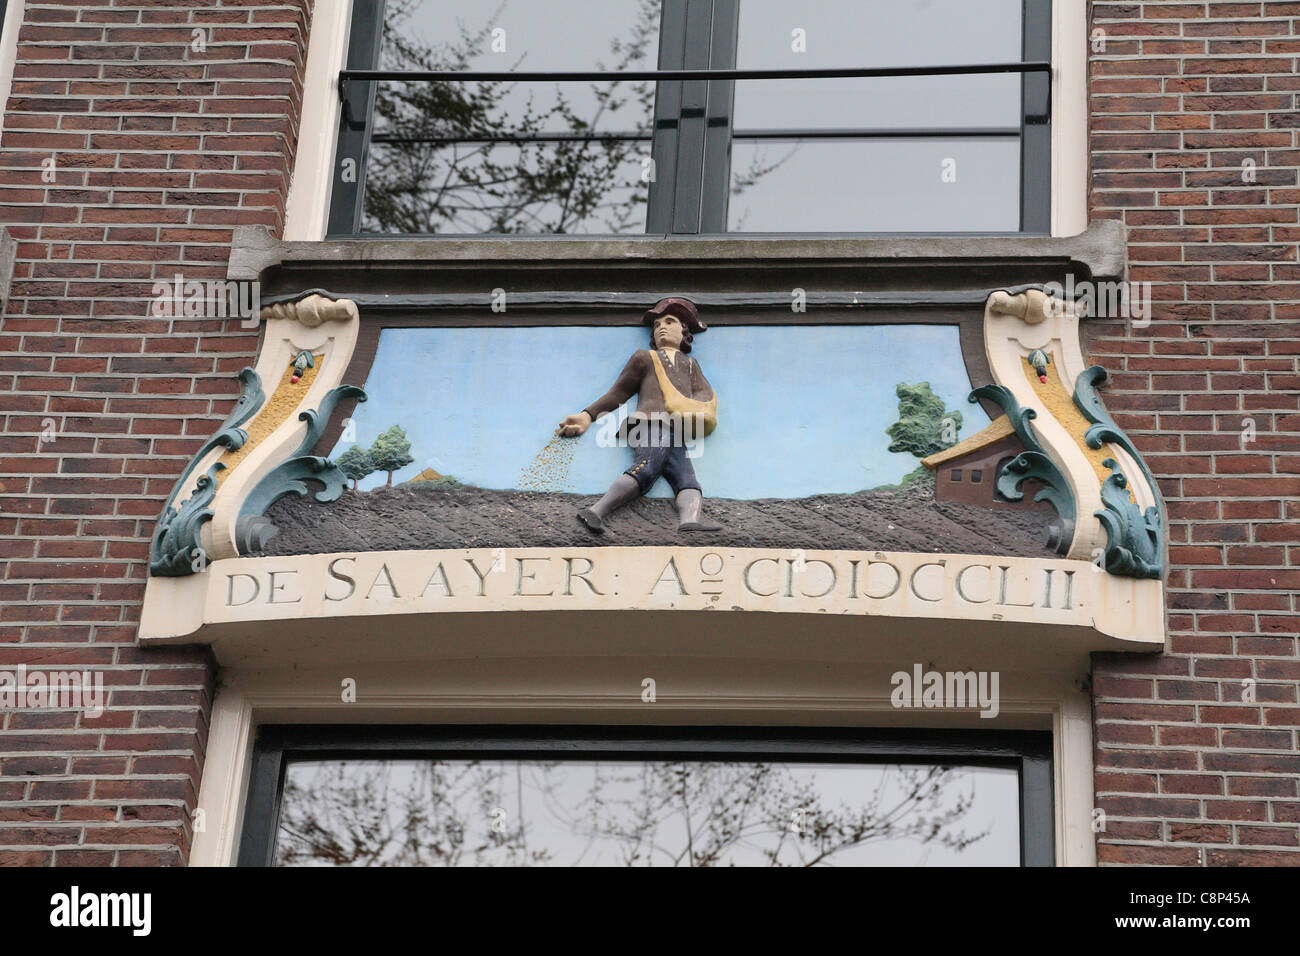 En signe de maison ornée de secours Jordaan représentant un homme les semences sur le champ labouré De Saayer semeur Amsterdam Hollande Pays-Bas Banque D'Images